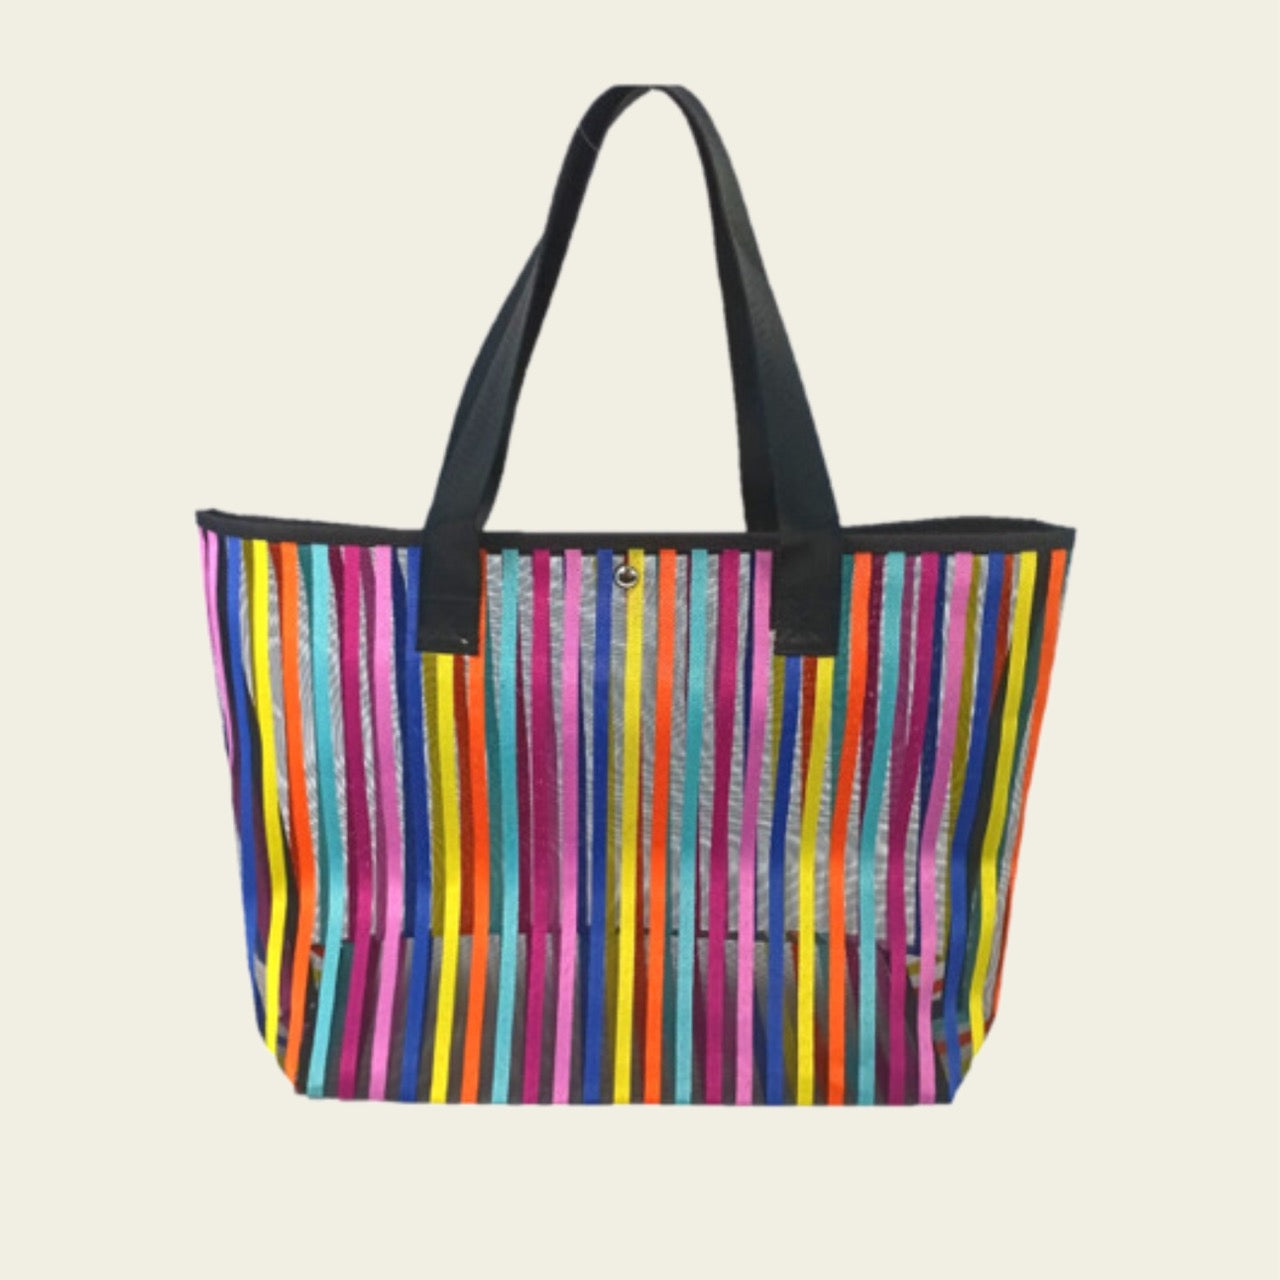 Mesh Tote Bag -Striped Design